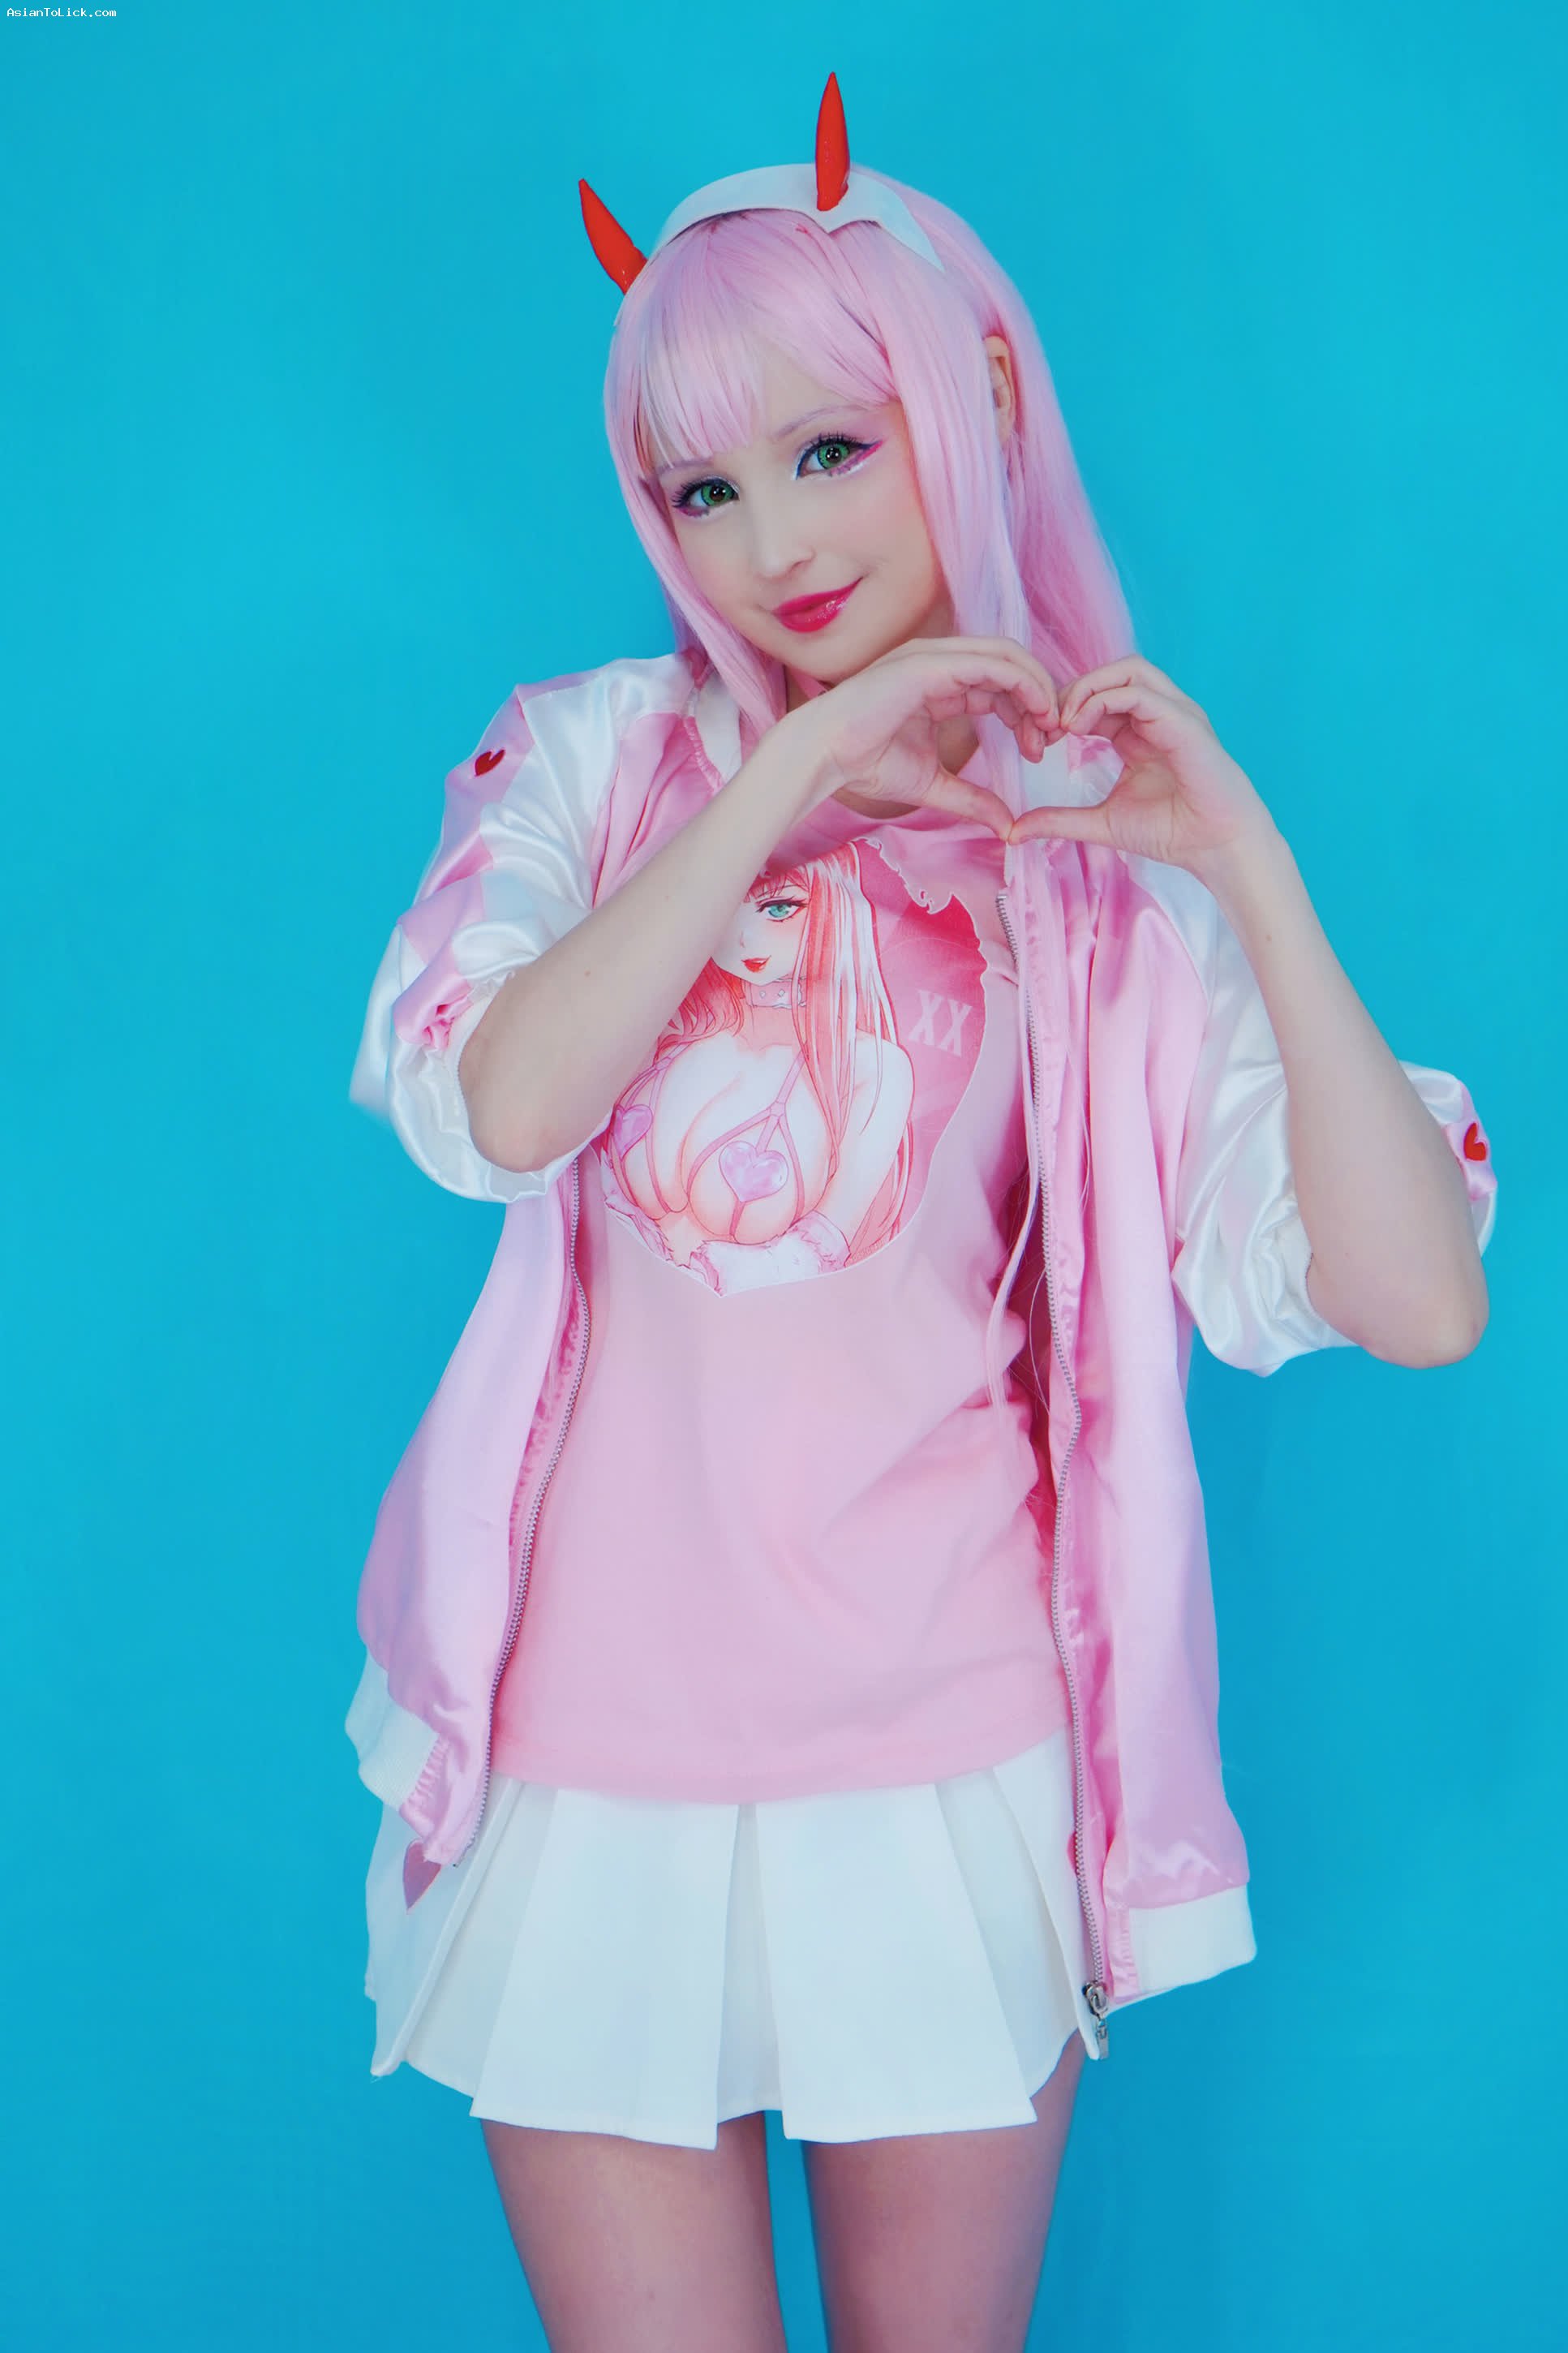 Hidori Rose con cosplay de Zero Two de Darling in the Franxx. + 2 Videos